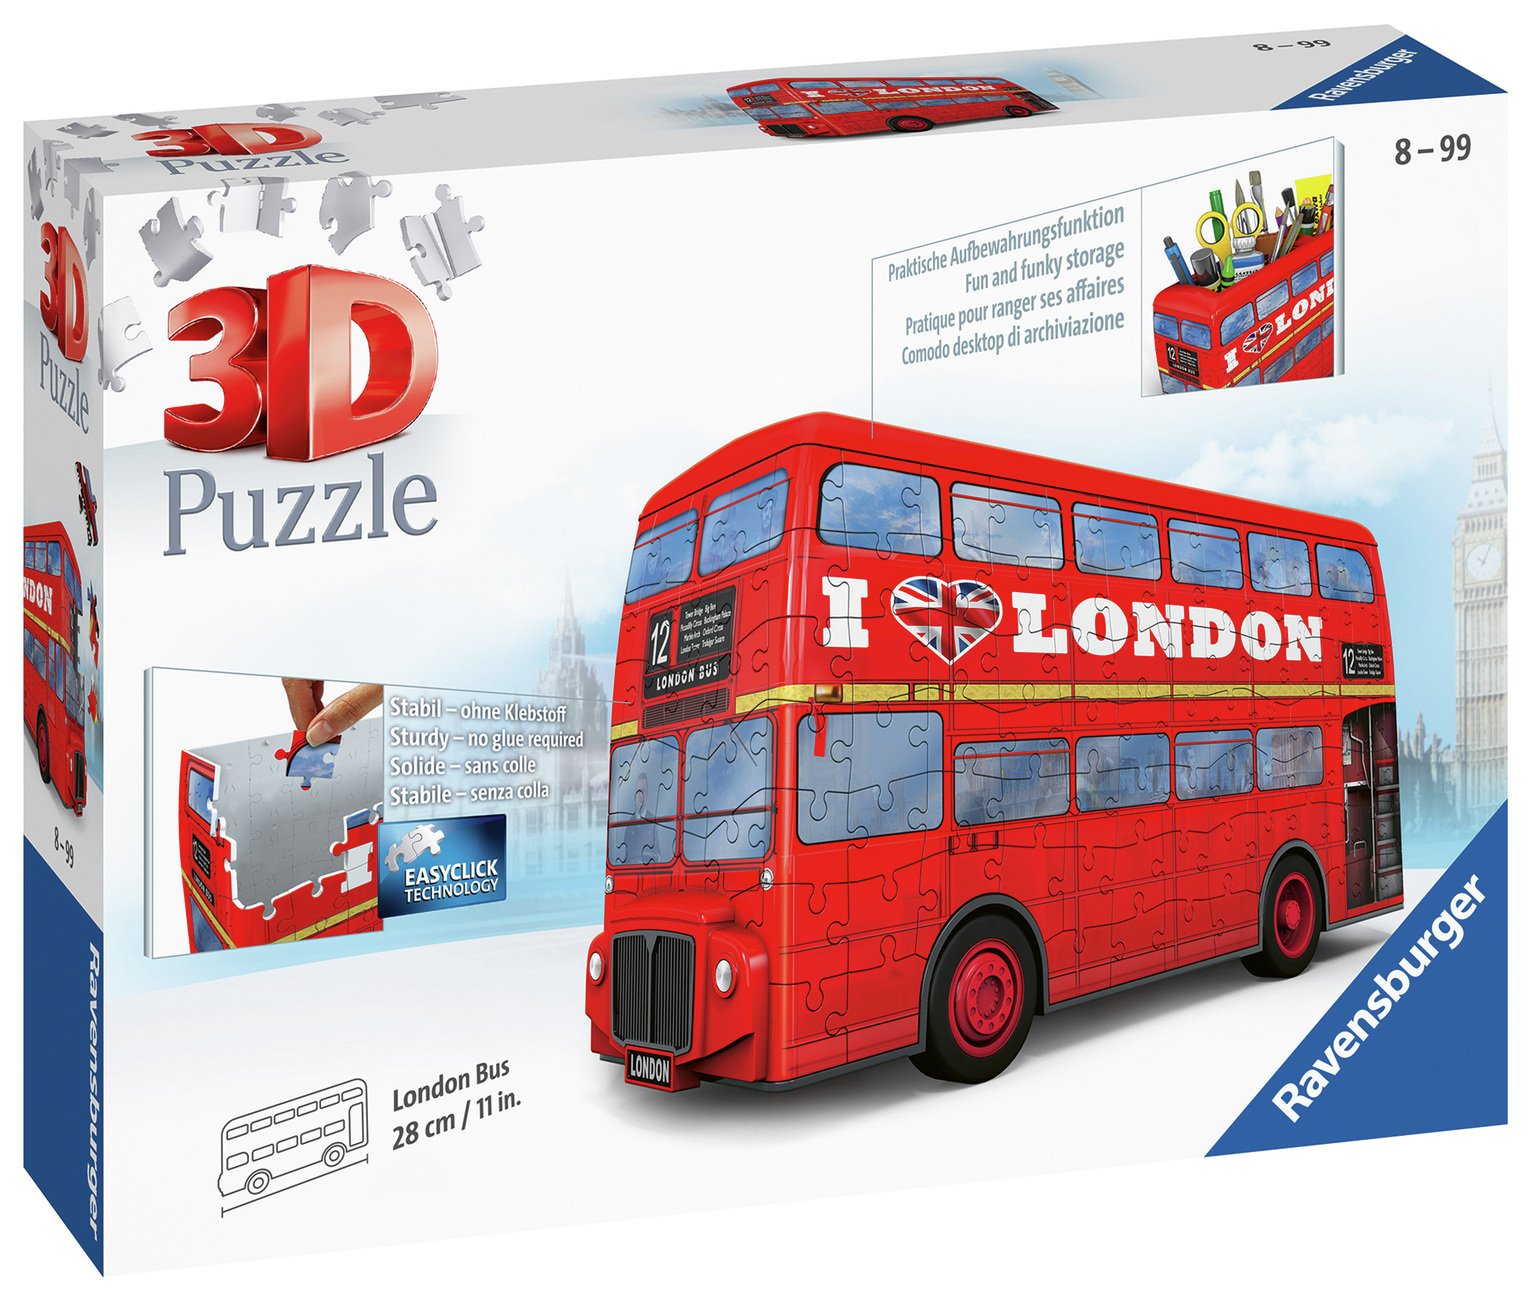 London Bus 3D Jigsaw Puzzle Review